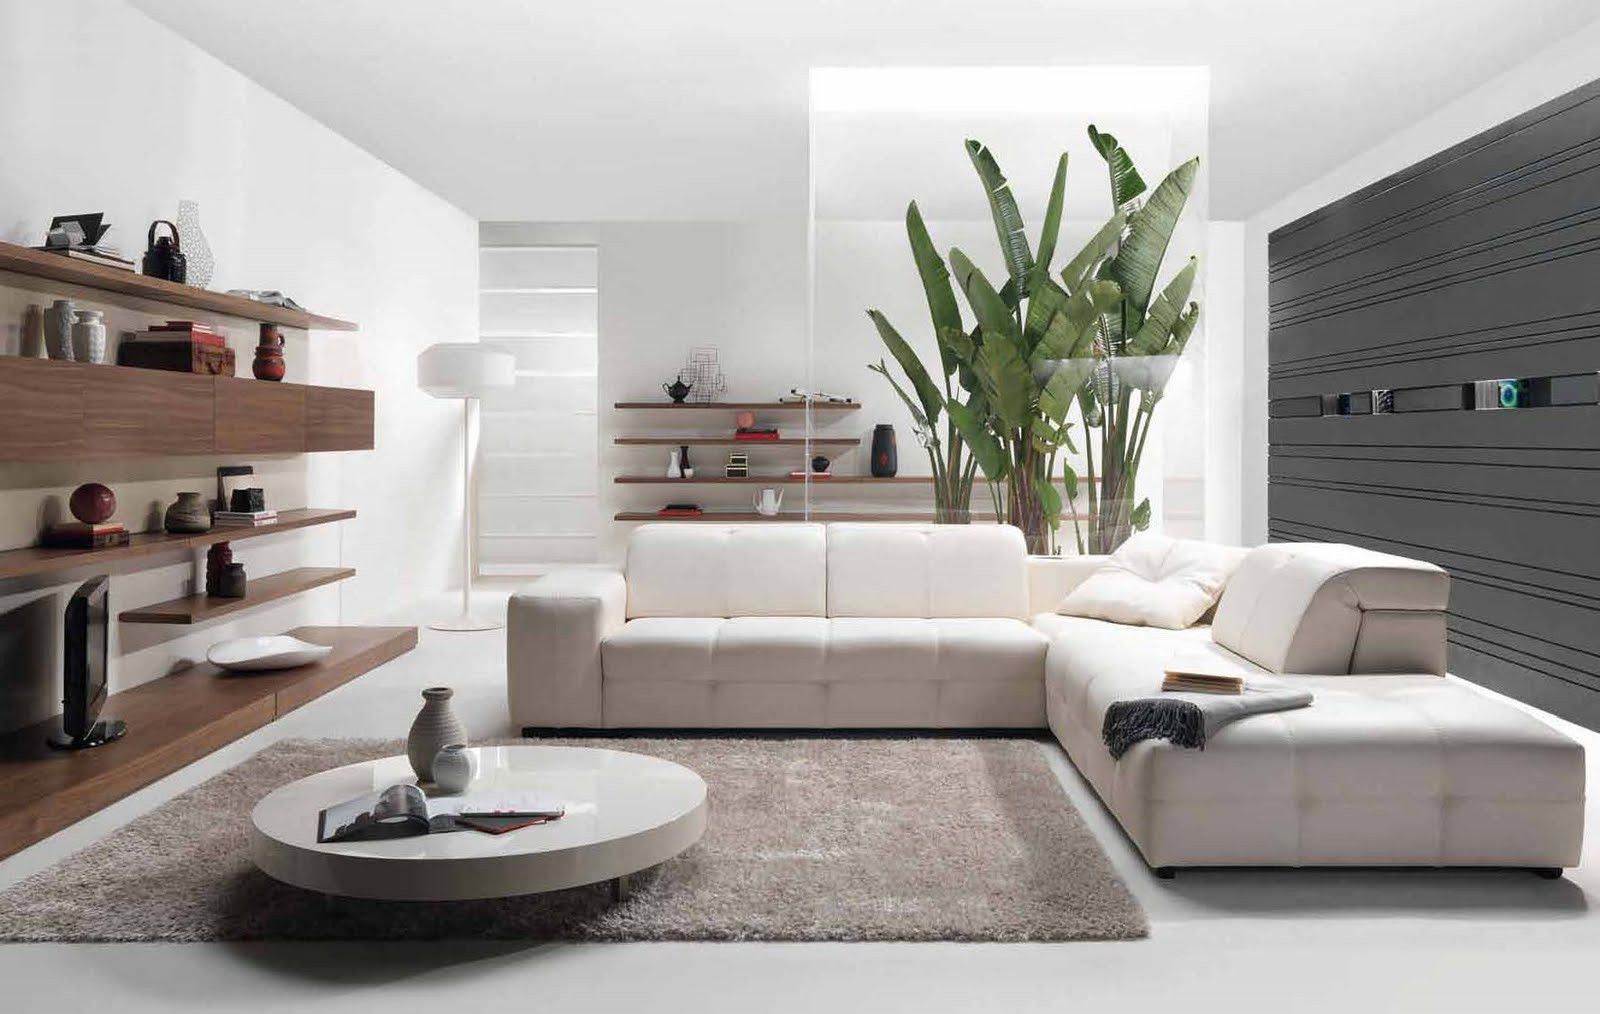 Contemporary Living Room Ideas
 Future House Design Modern Living Room Interior Design